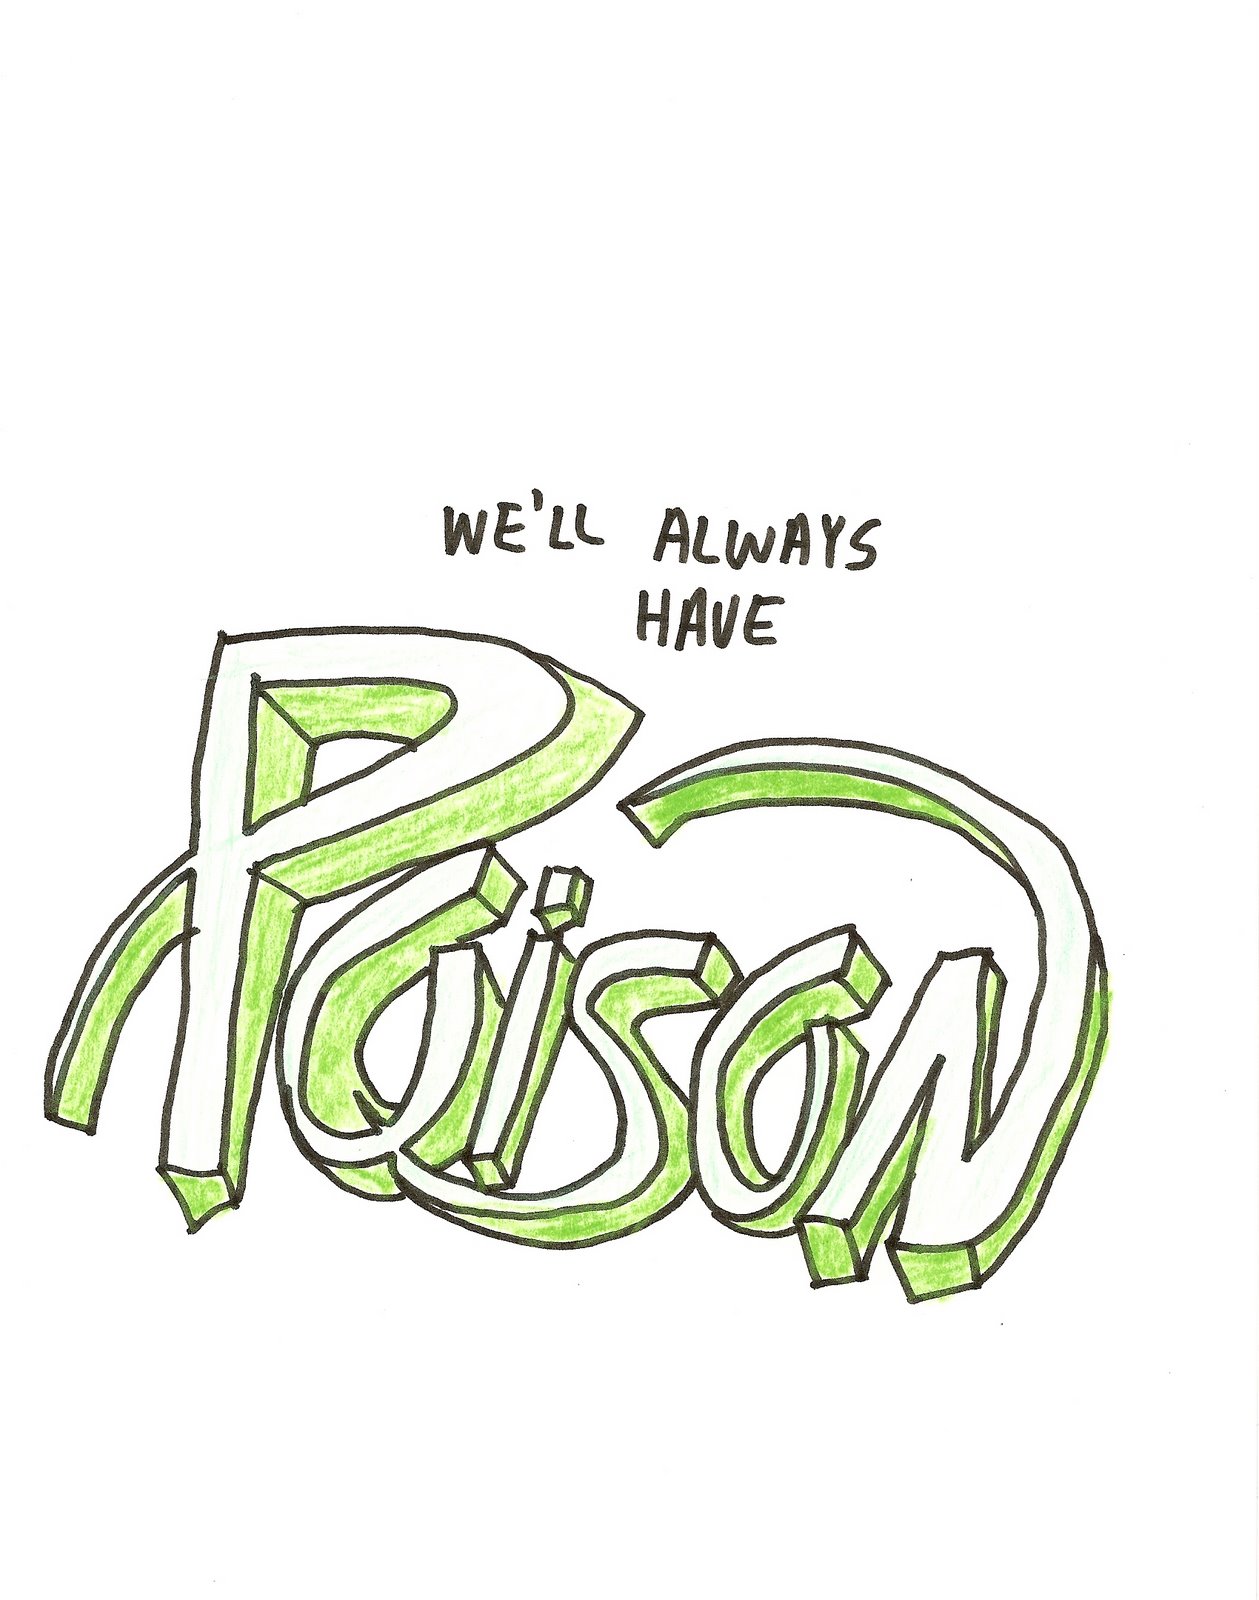 [poison.jpg]